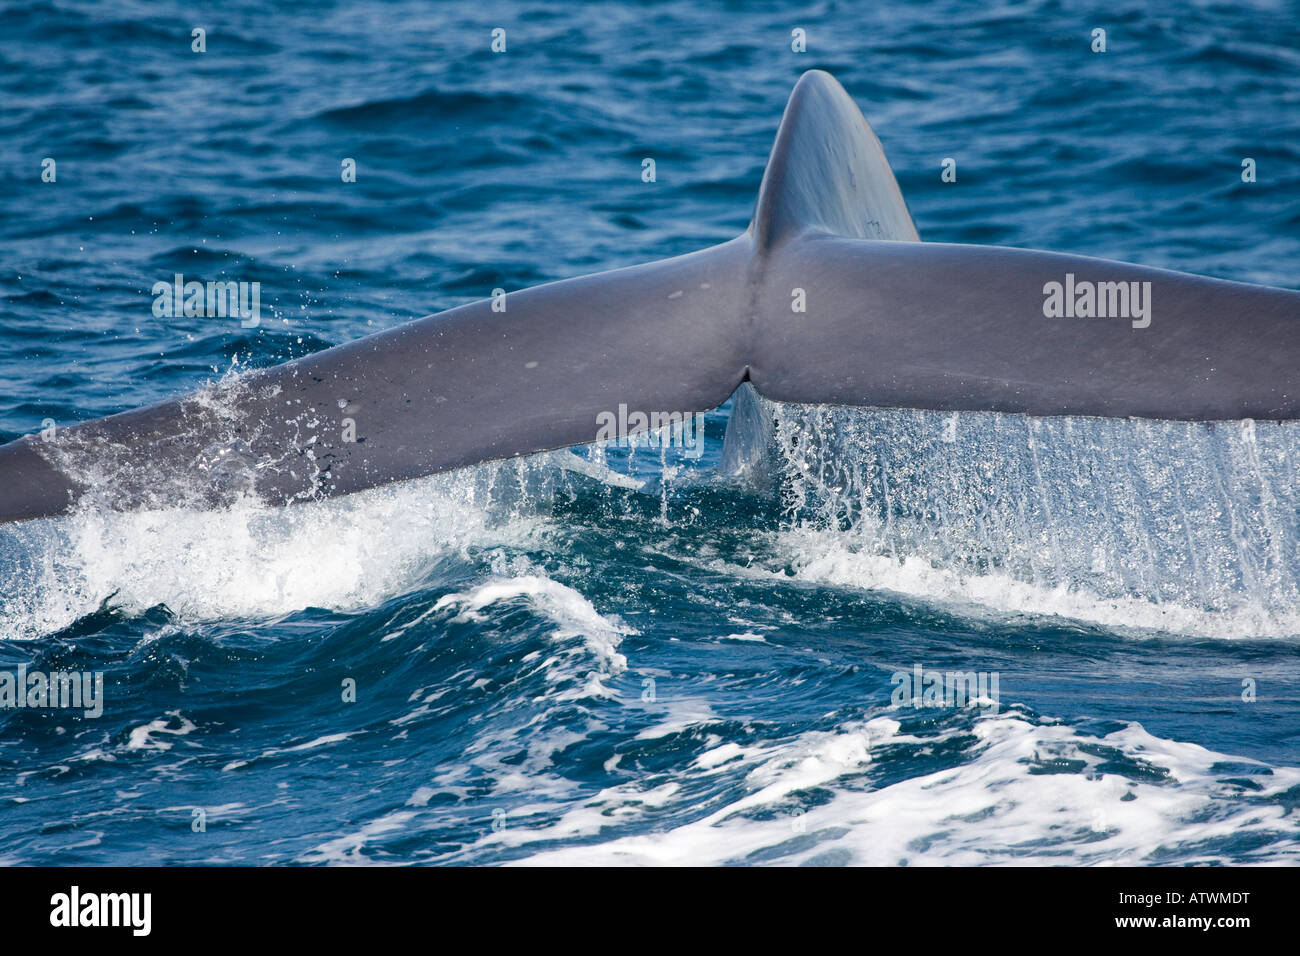 La coda di una balena blu, Balaenoptera musculus, al largo della costa della California, Stati Uniti d'America. Foto Stock